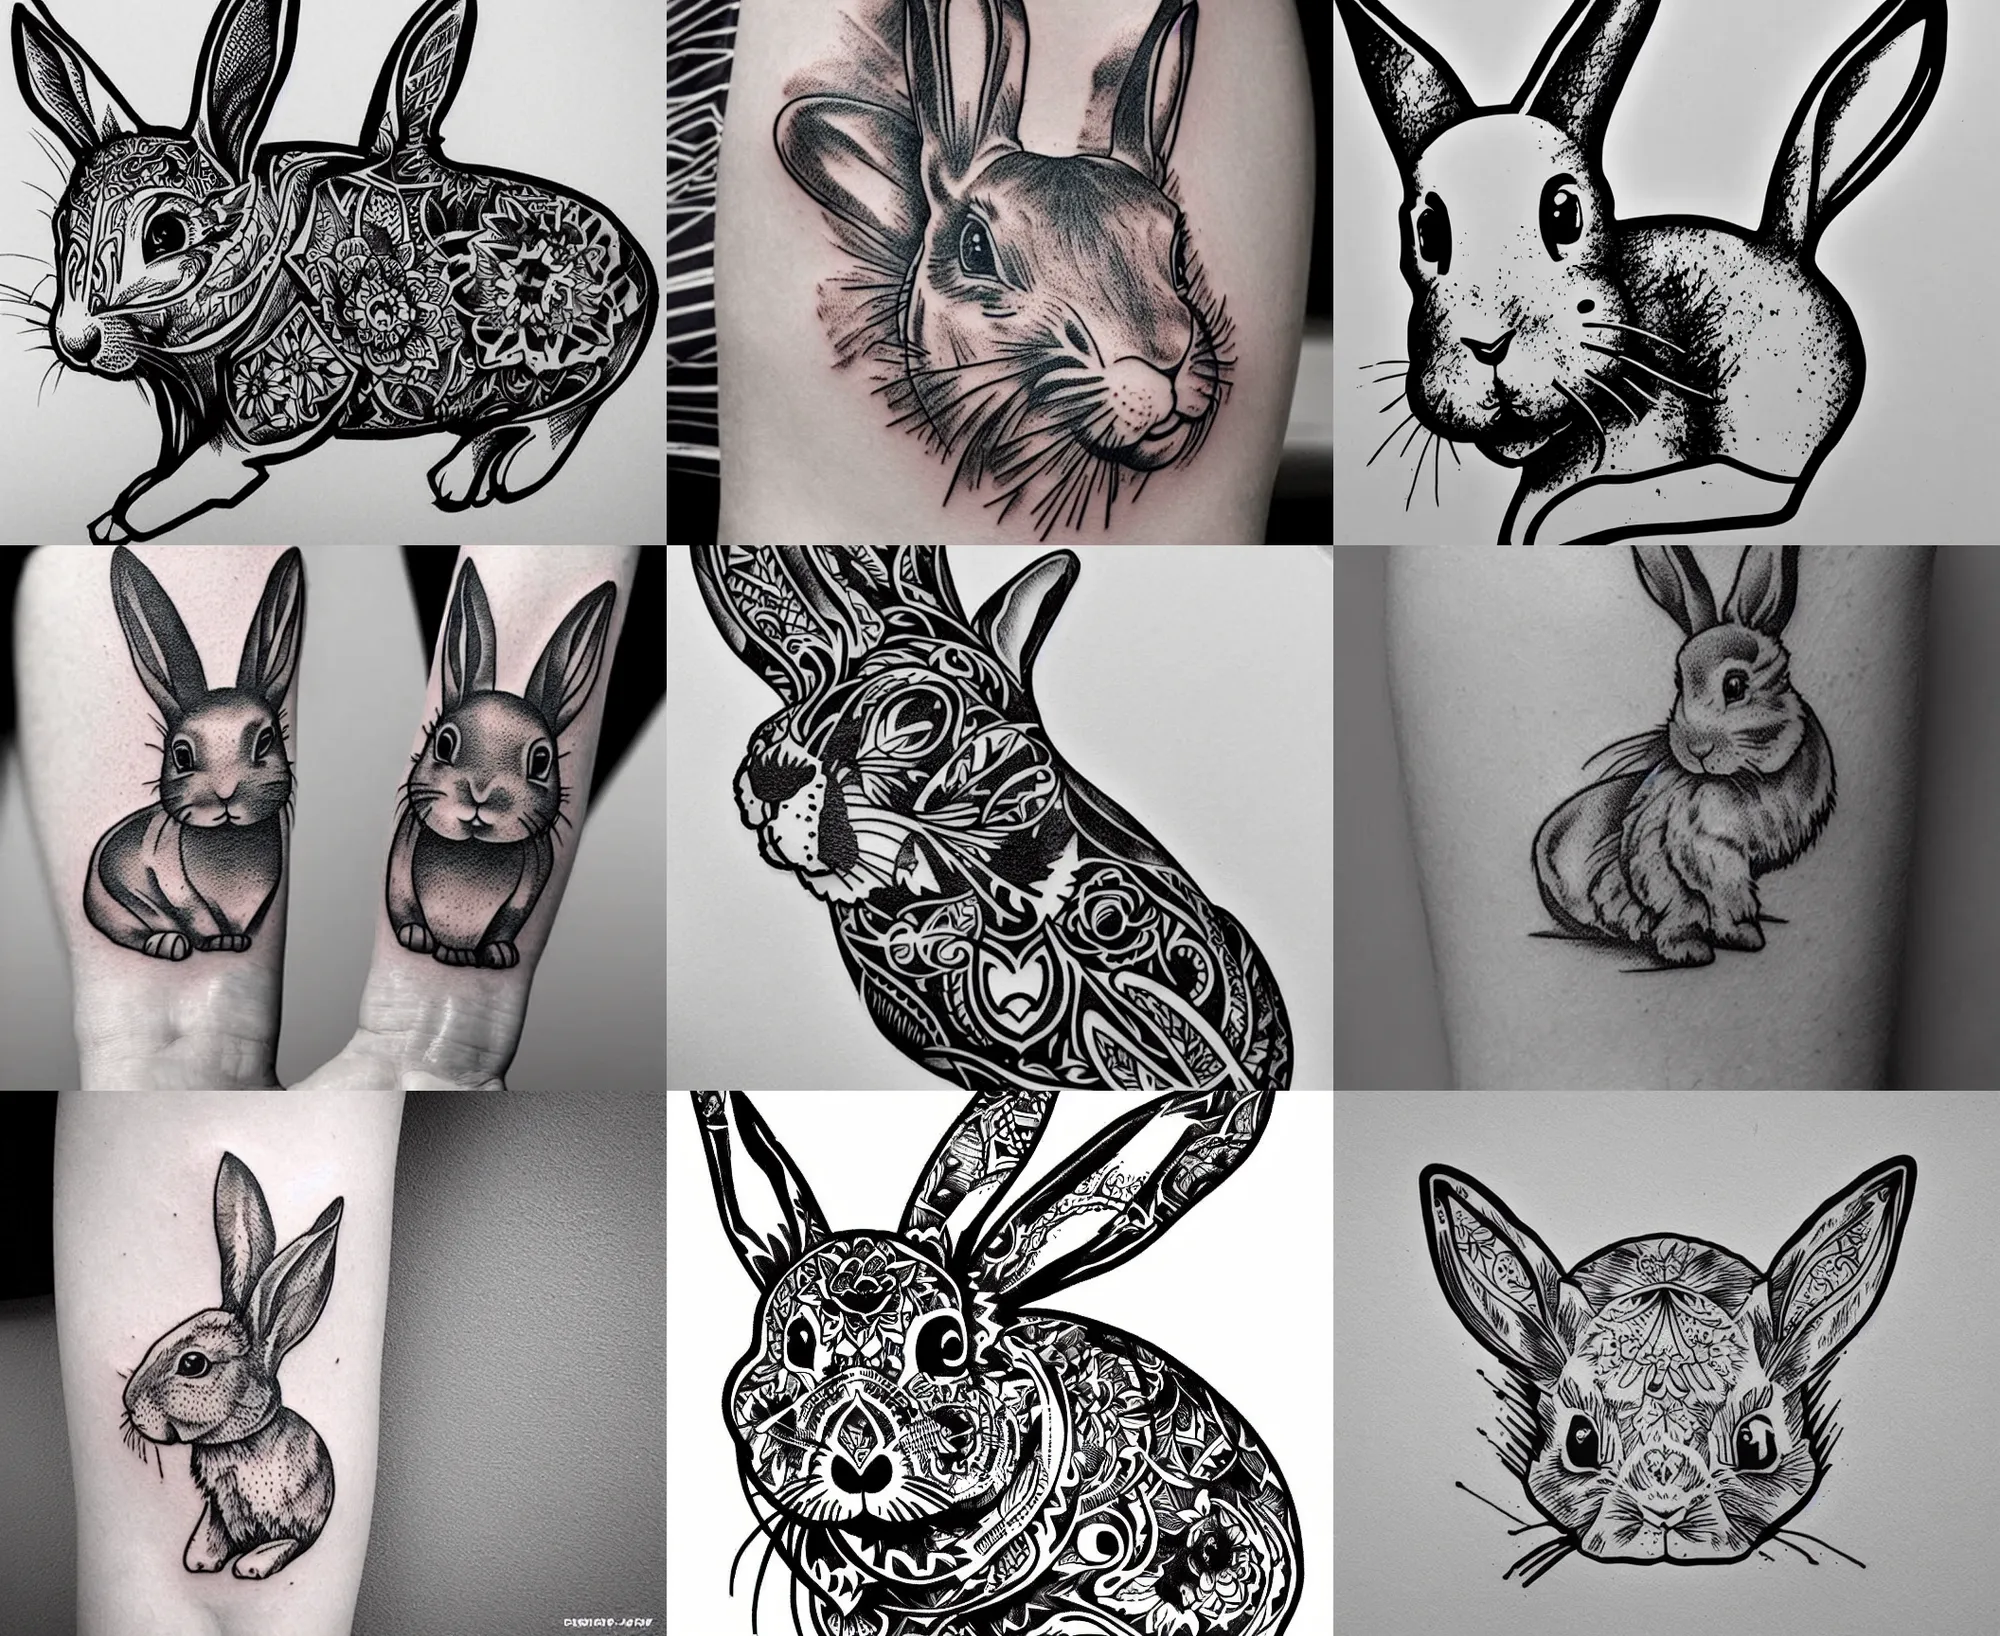 Tattoo uploaded by Tattoodo • Cute bb bunny tattoo by Minnie #Minnie  #petportraittattoo #fineline #minimal #realism #realistic #illustrative # bunny #rabbit #cute #blackandgrey #small #tattoooftheday • Tattoodo